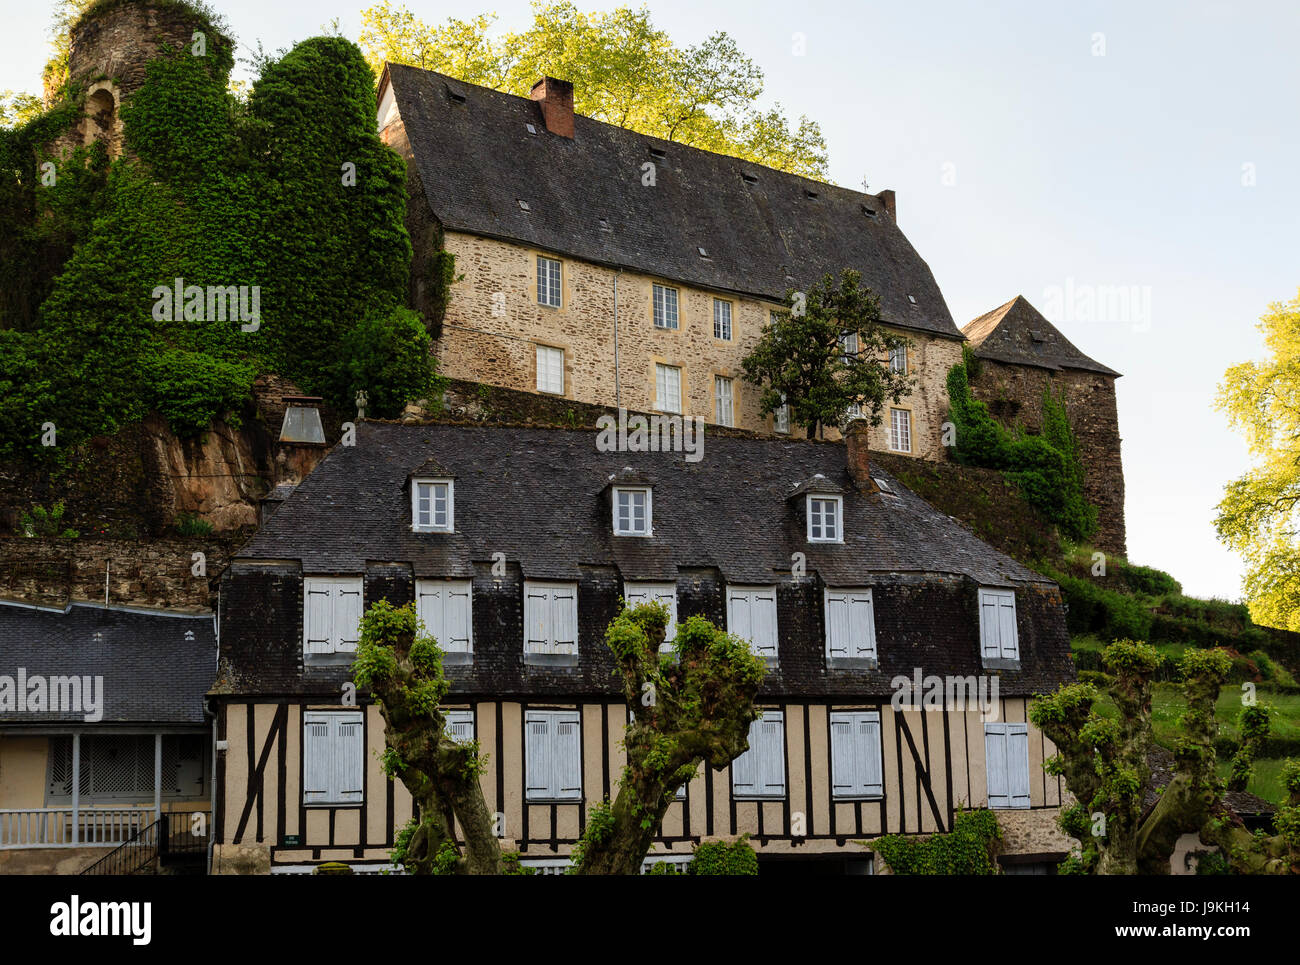 France, Corrèze, Segur le Chateau, étiqueté Les Plus Beaux Villages de France (Les Plus Beaux Villages de France), maison à colombages et ruines Banque D'Images